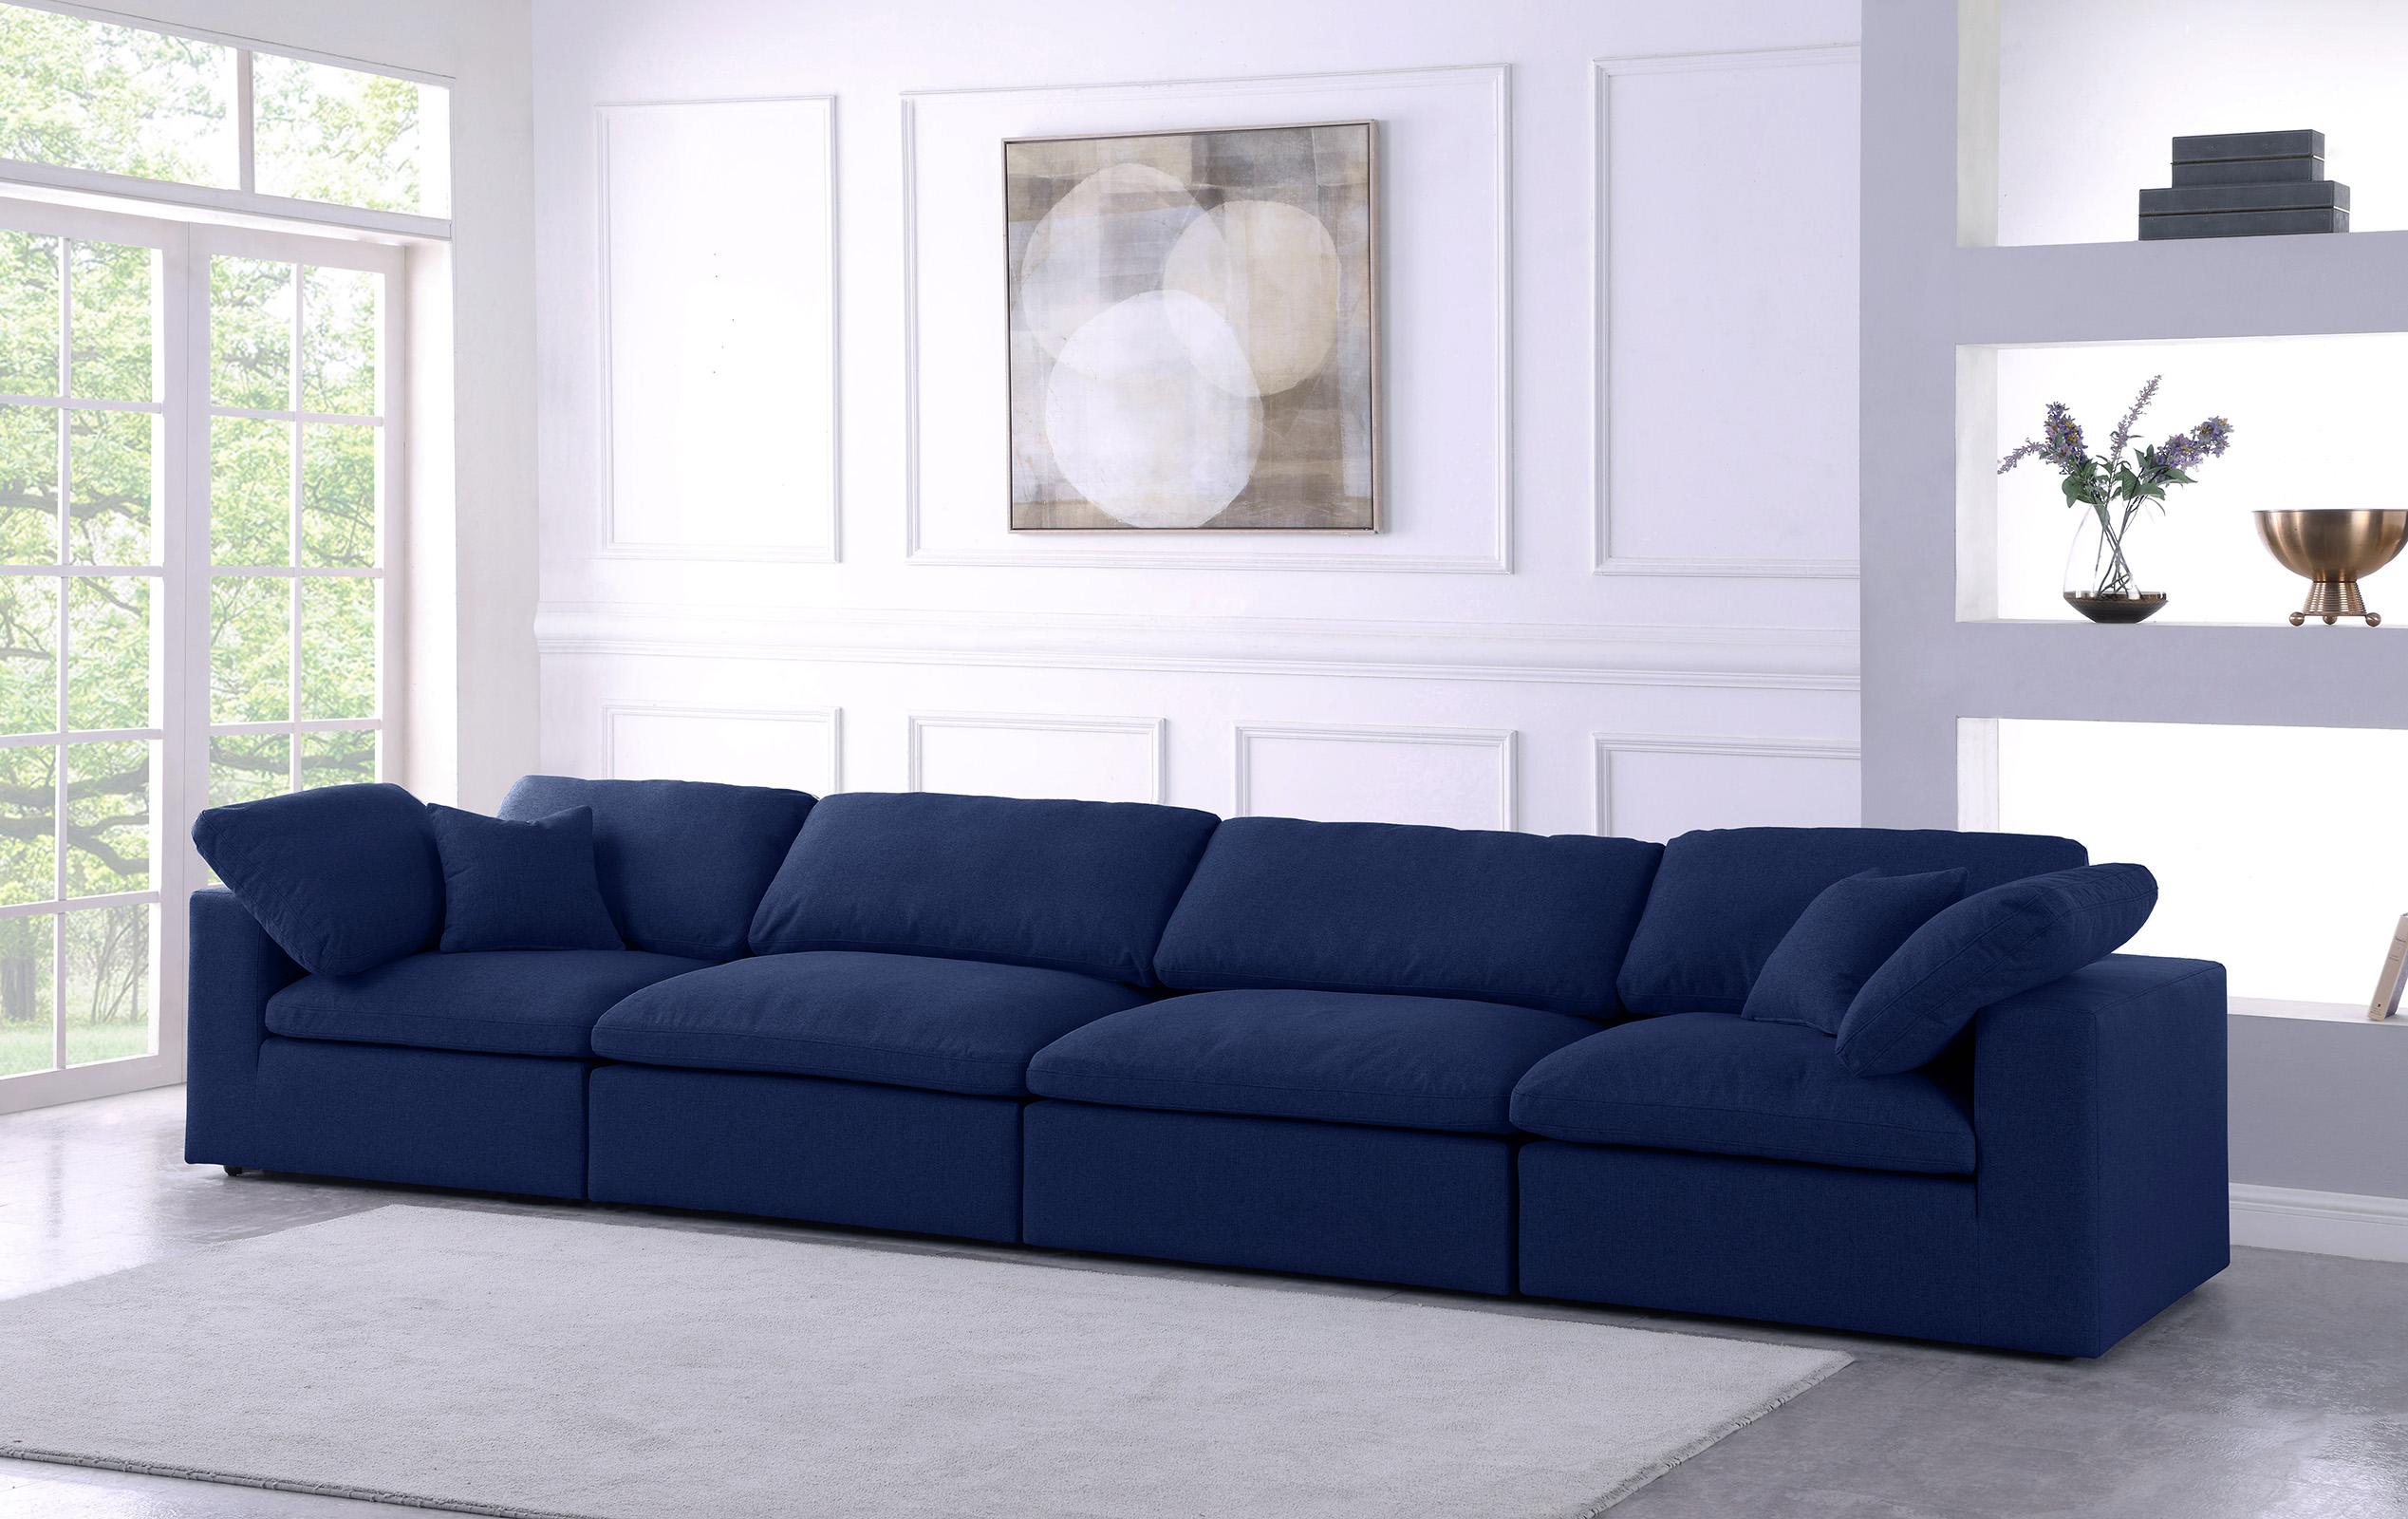 

    
Serene Navy Linen Textured Fabric Deluxe Comfort Modular Sofa S158 Meridian
